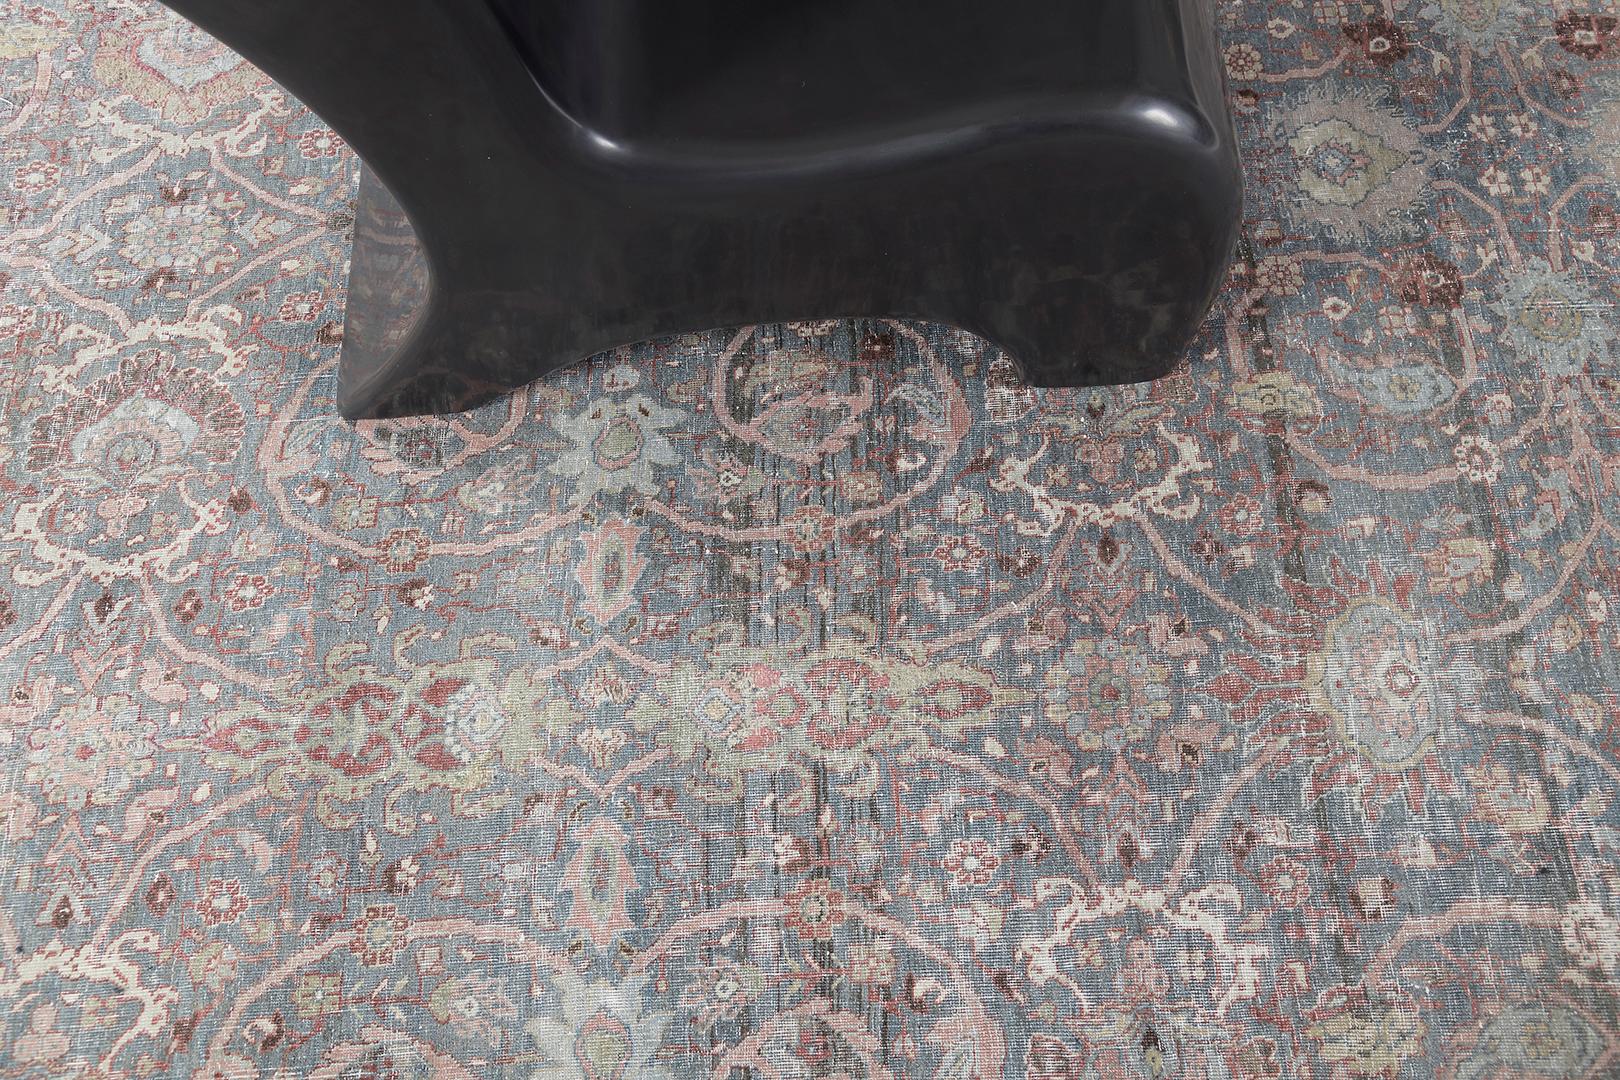 Dieser klassische persische Bidjar-Teppich zeichnet sich durch die schönsten Blautöne in seiner Farbpalette aus. Zu seiner atemberaubenden Ästhetik tragen die knalligen Gelb- und Rottöne bei, die diesen Teppich zu einem echten Hingucker machen. Der